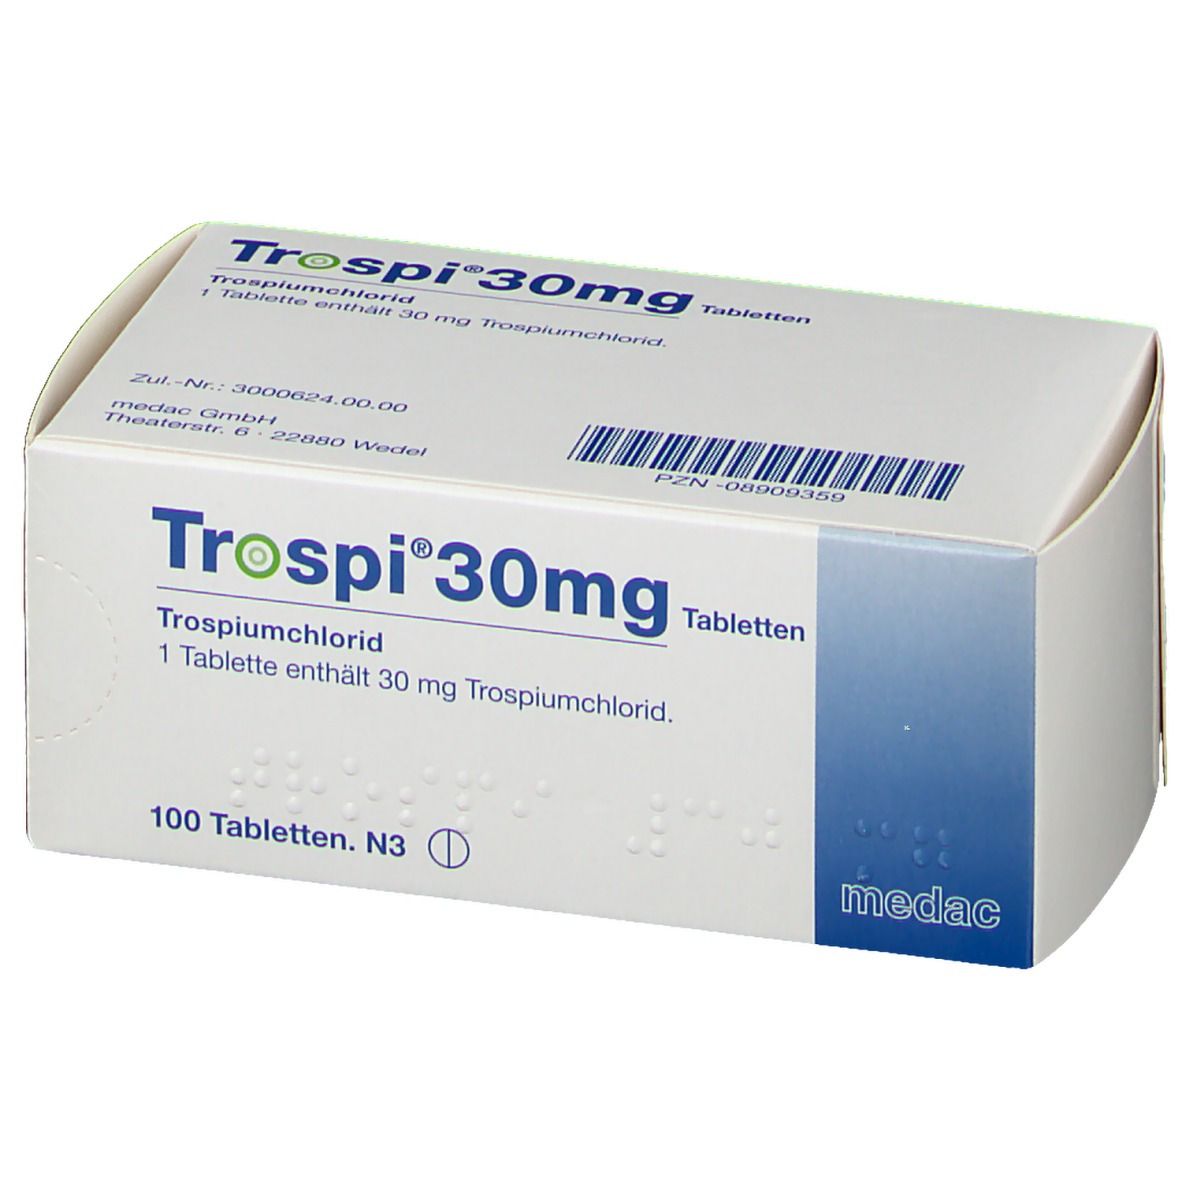 Trospi® 30 mg